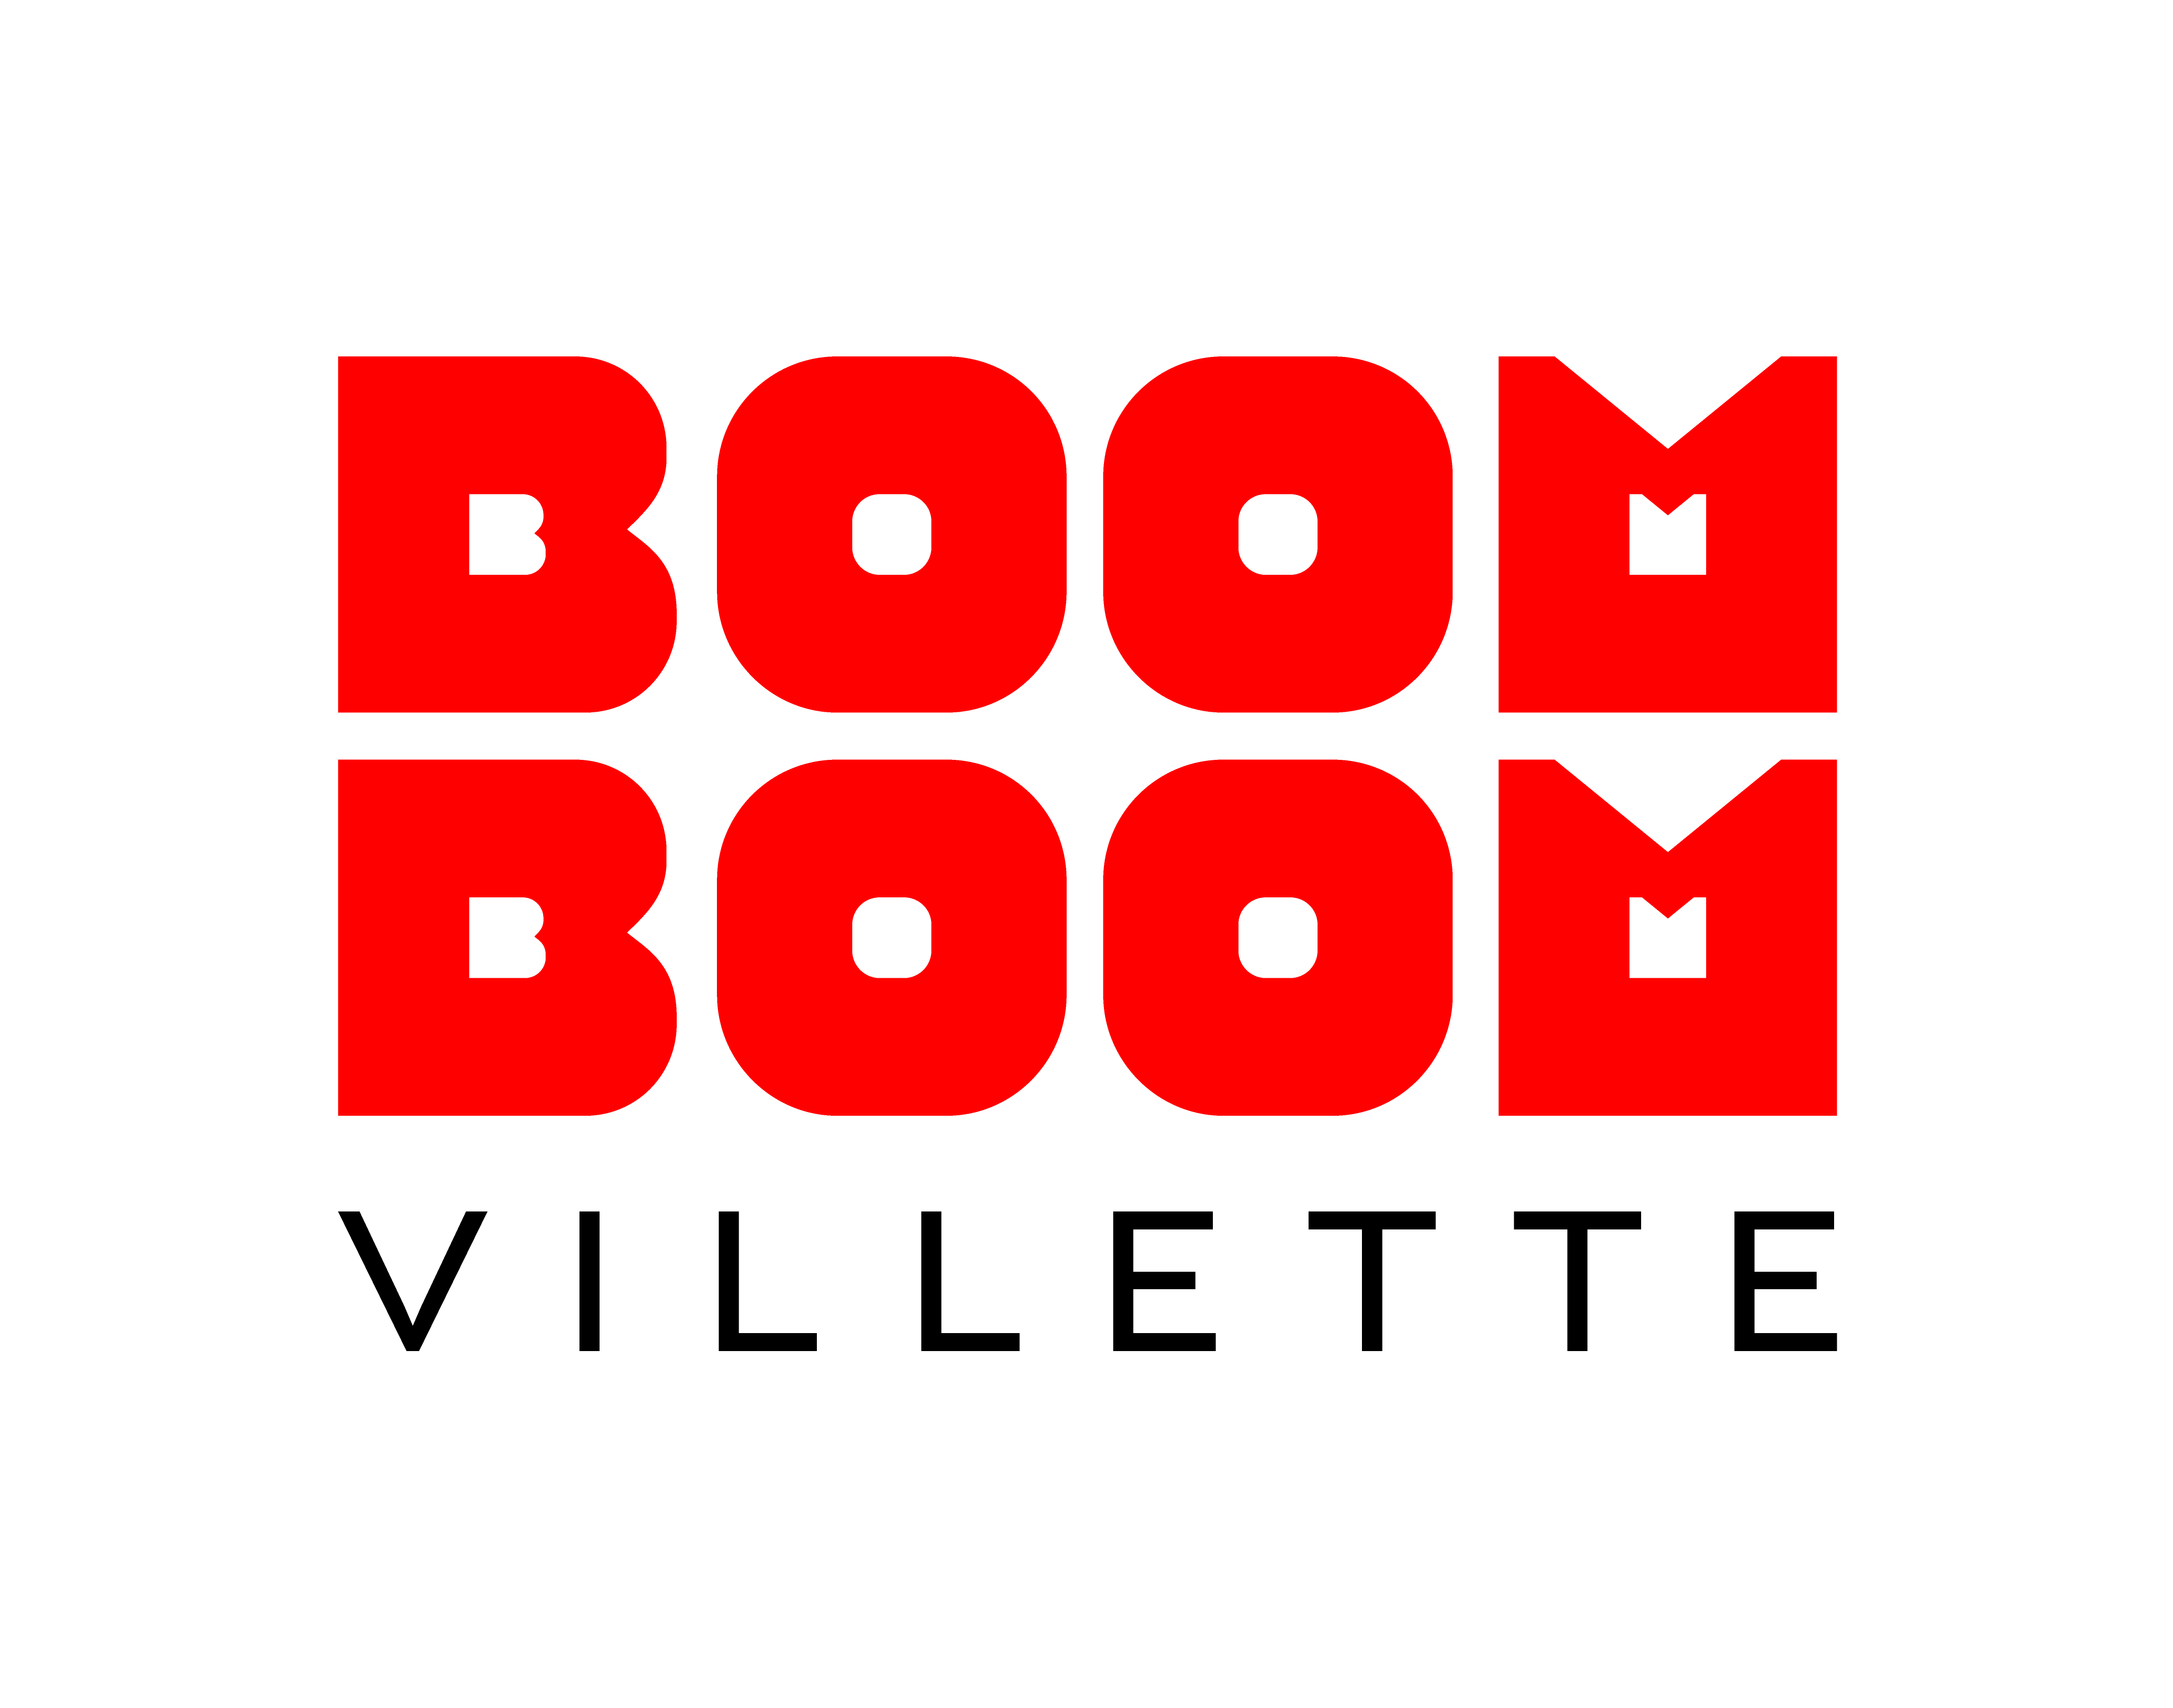 Boom boom villette partenaire de la compagnie maya